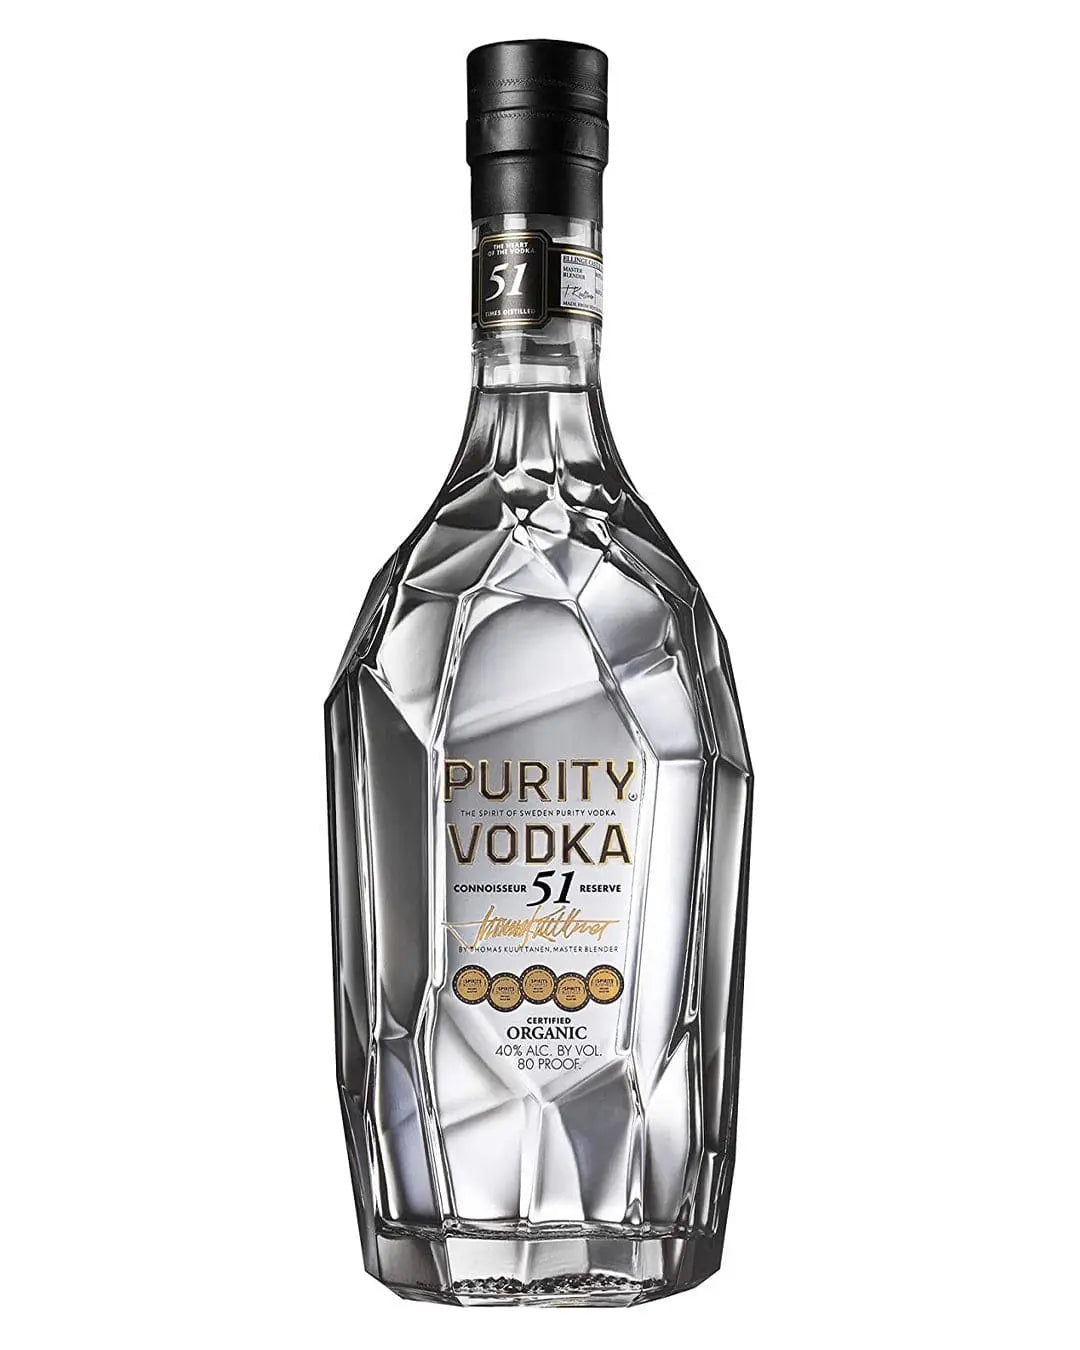 Purity Connoisseur 51 Plain Vodka, 70 cl Vodka